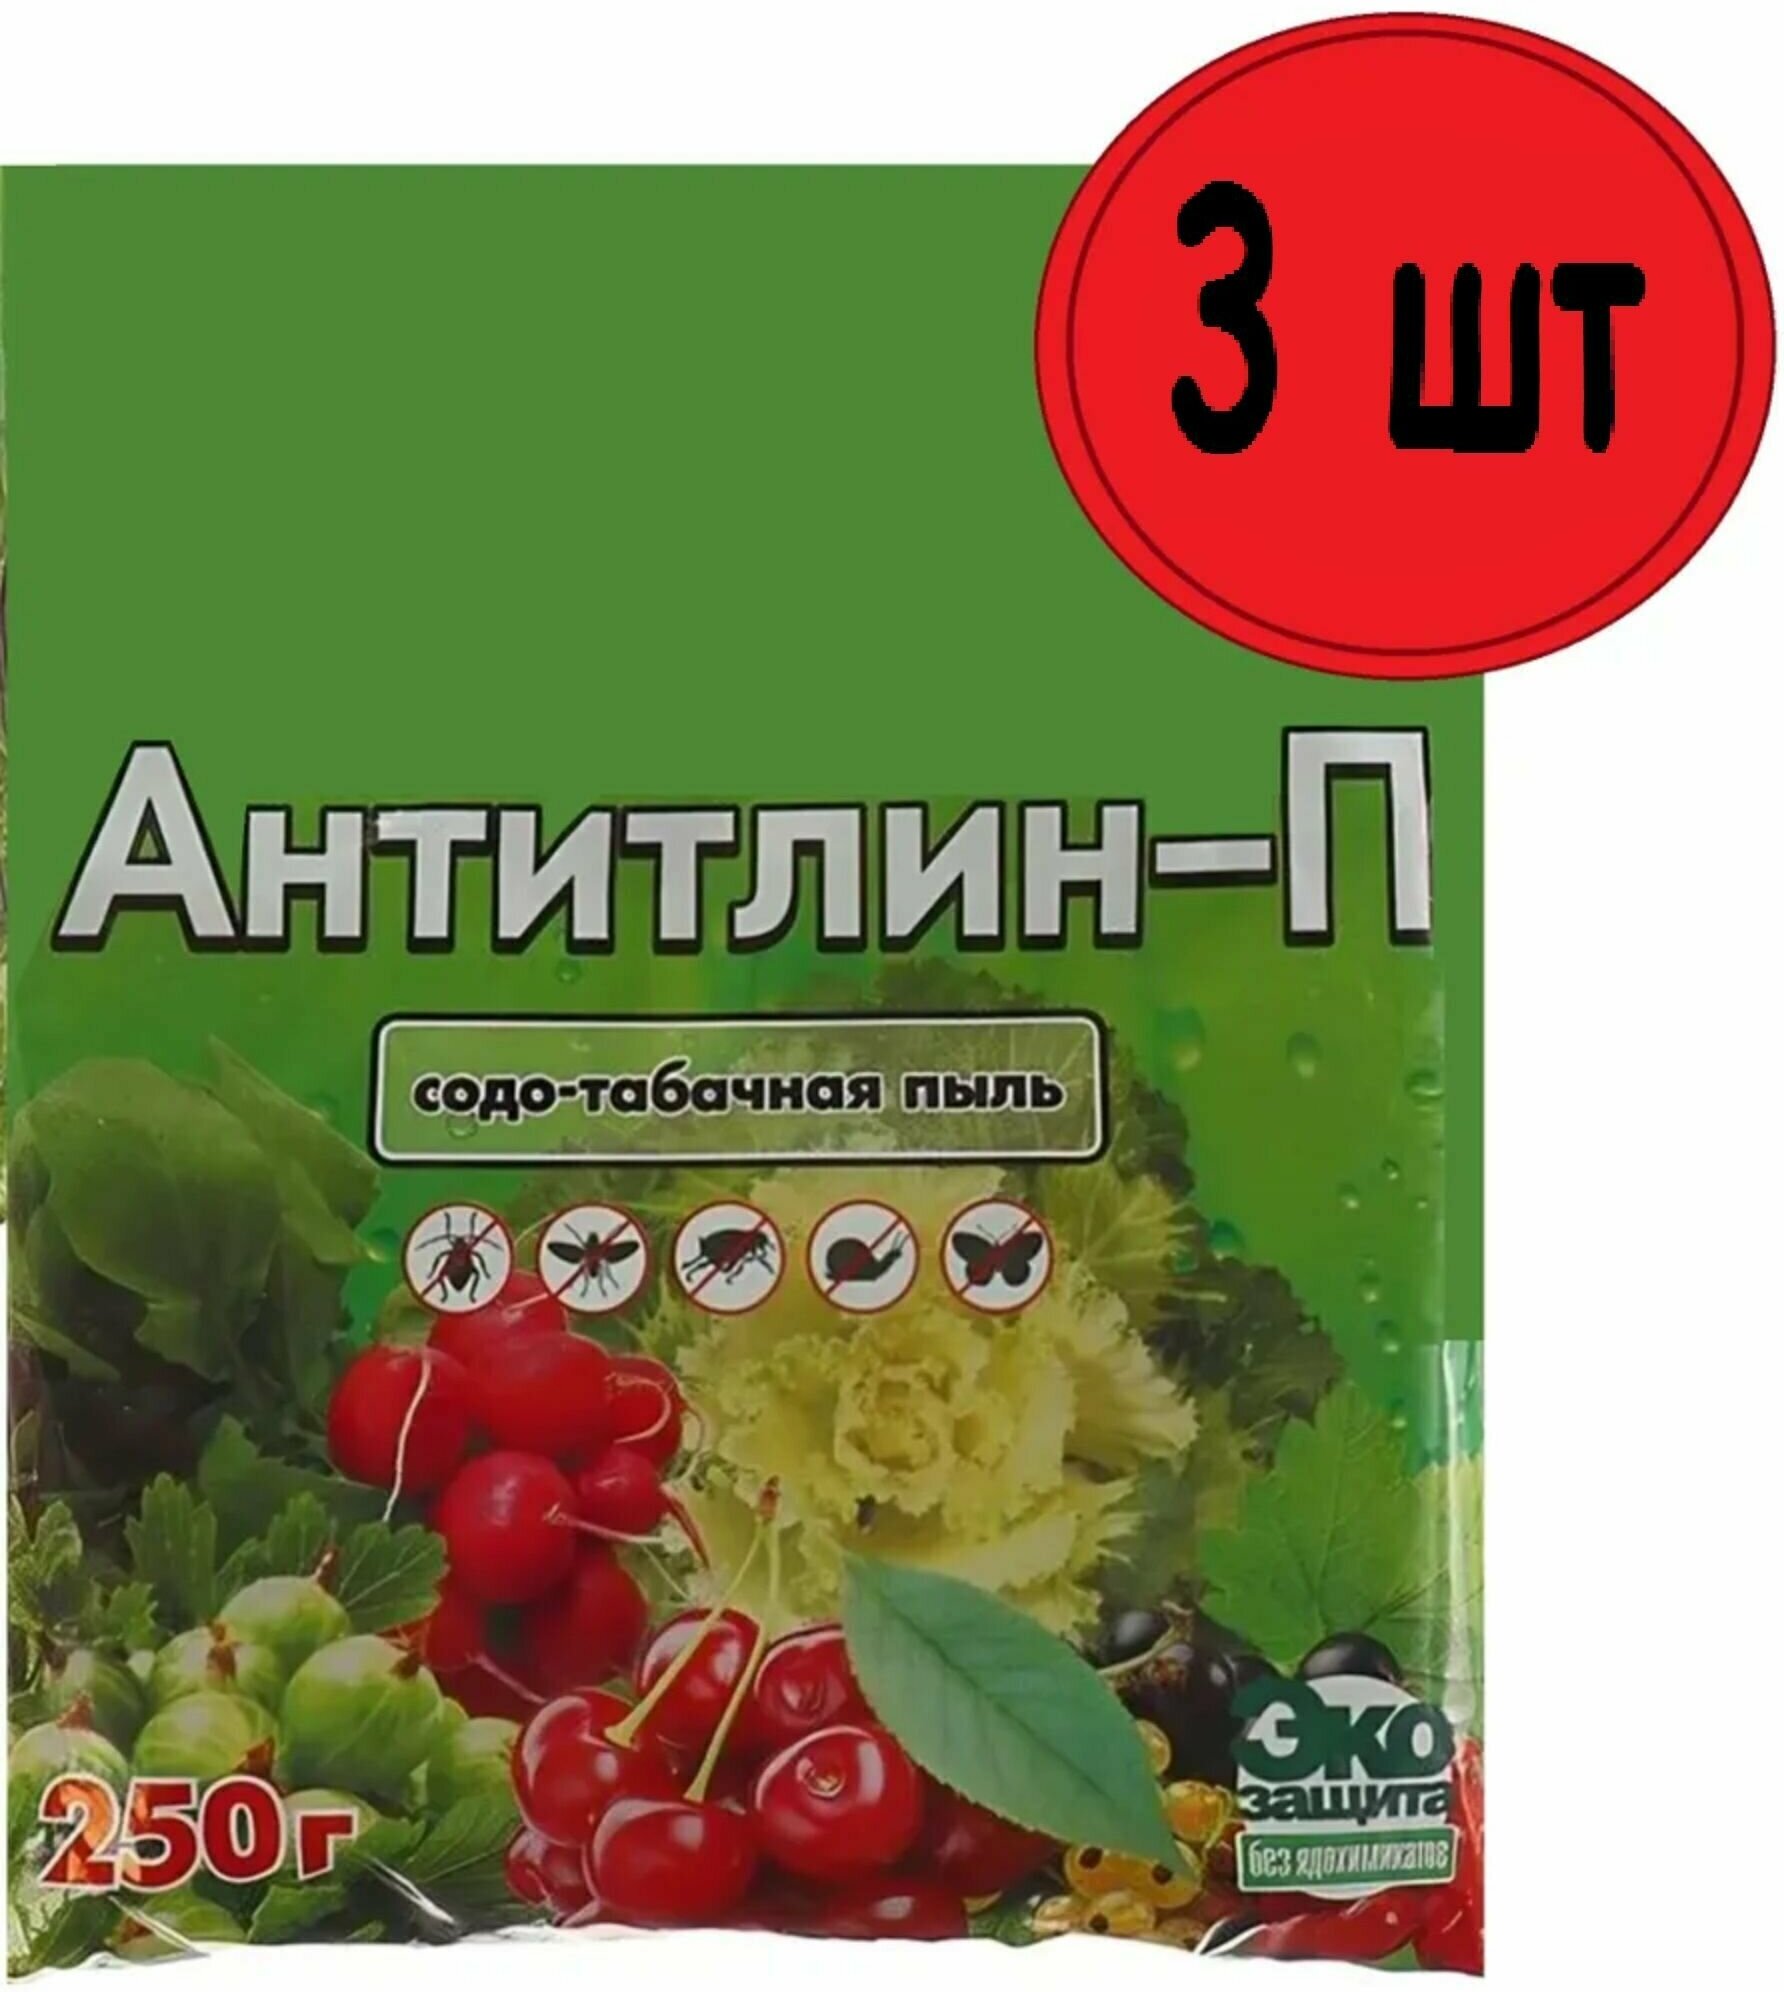 Удобрение "Антитлин" (содо-табачная пыль) 3шт по 0,25 кг. Органический порошок для обработки посевов от тли, капустной моли и других вредителей, стимулирует развитие растений